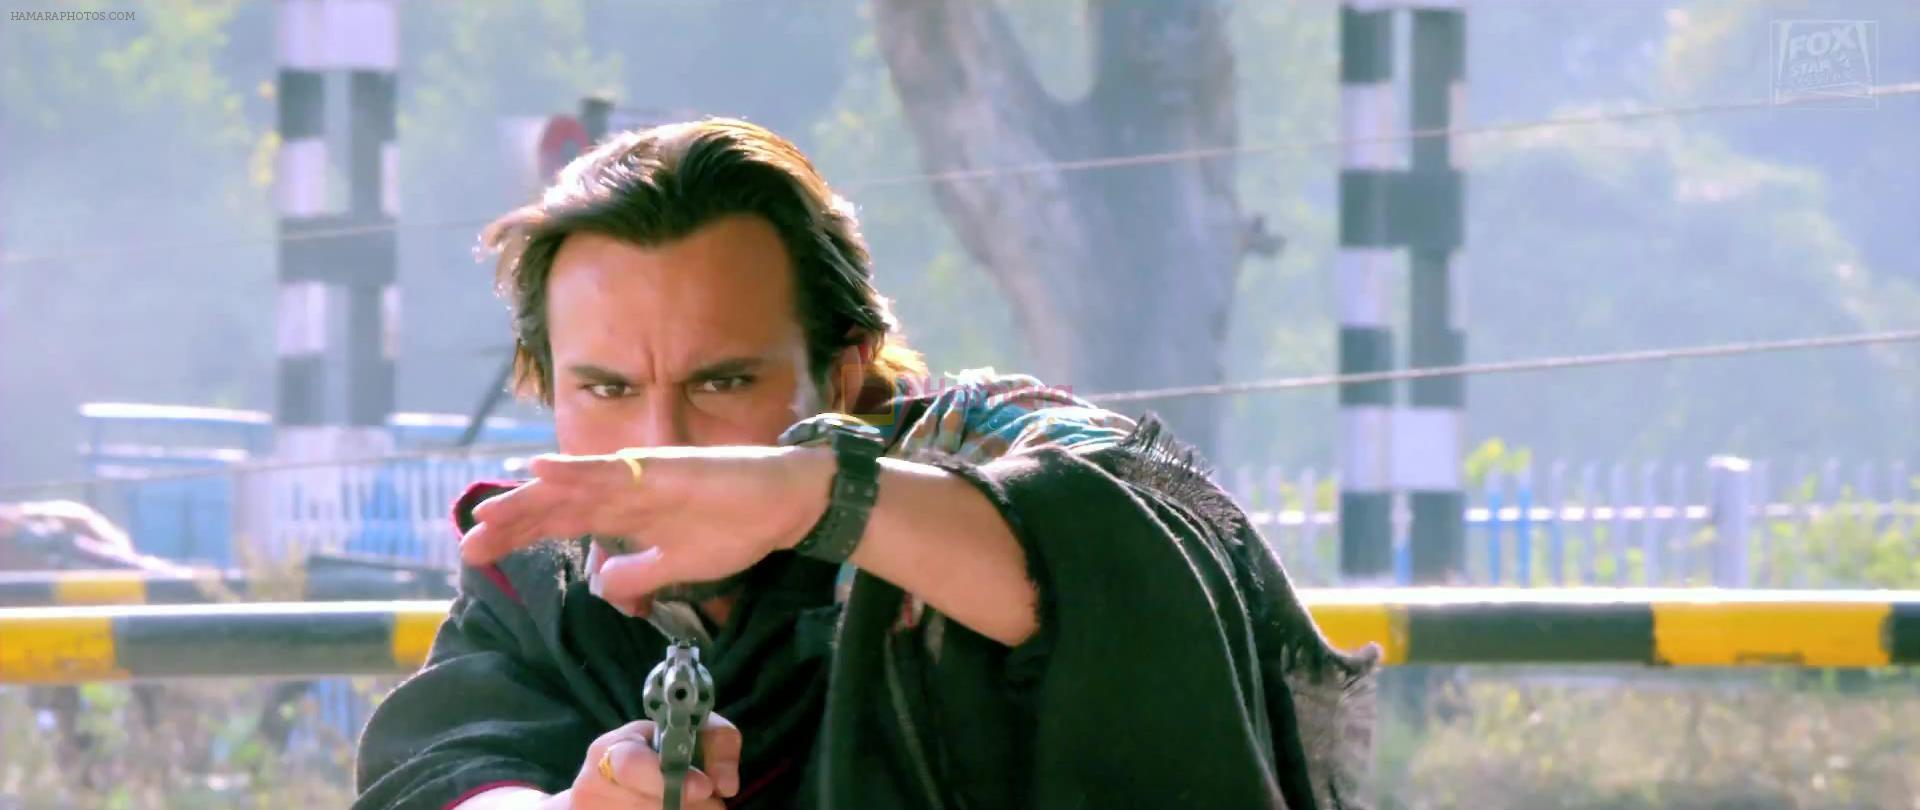 Saif Ali Khan as Raja Mishra in Bullett Raja movie still